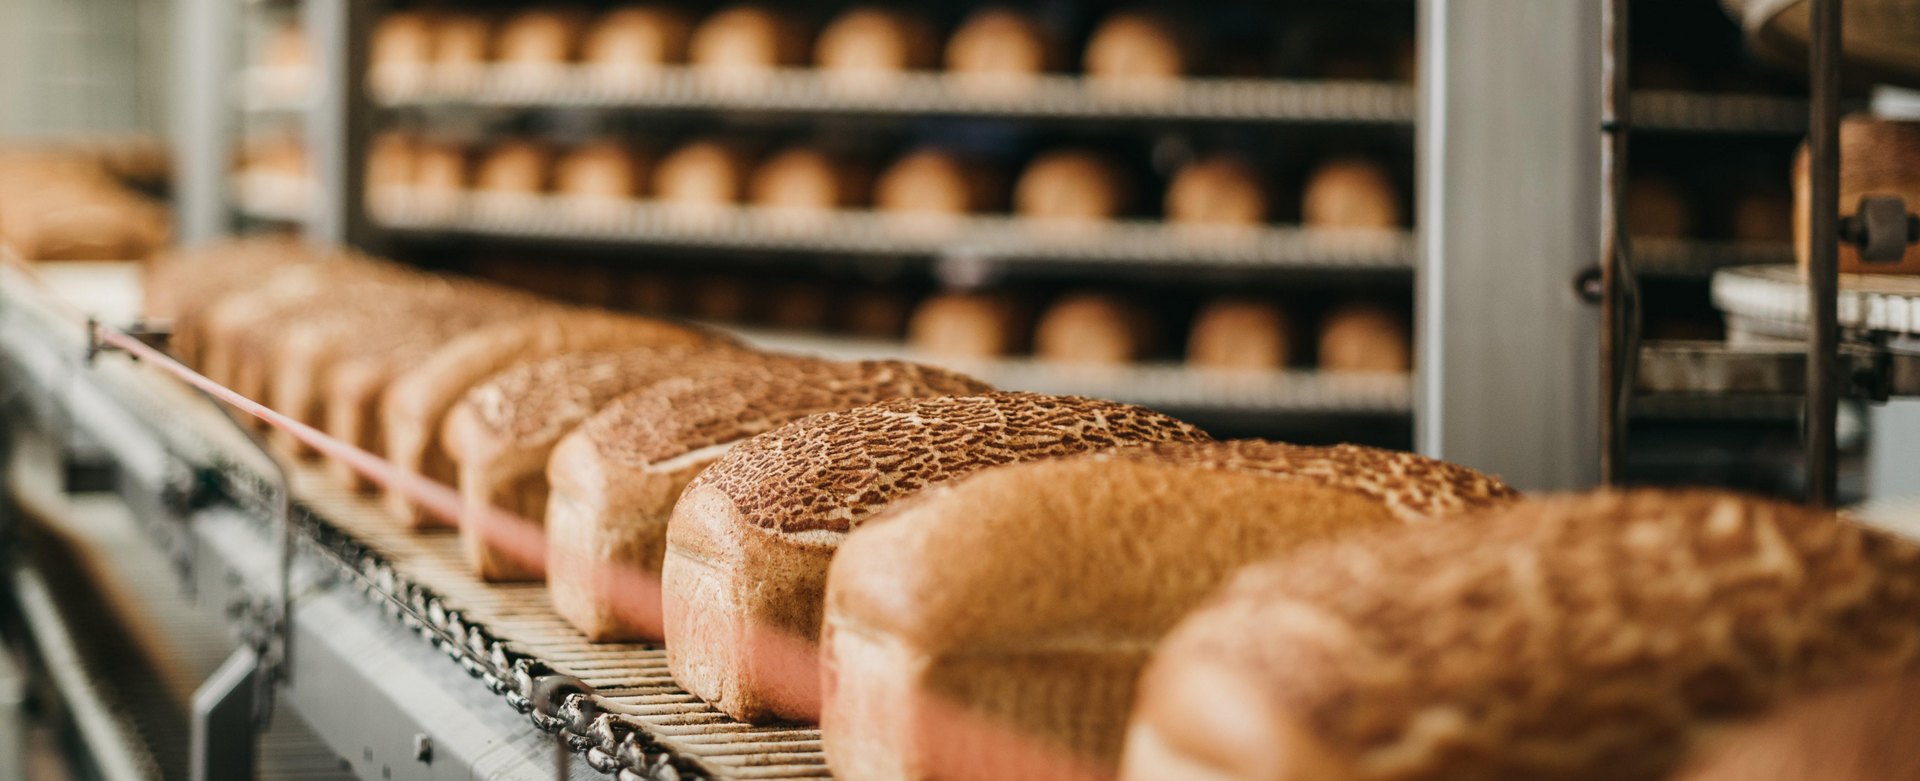 Die Produktion vieler Lebensmittel und Getränke - hier Brotlaibe auf einem Förderband - erfordert den Einsatz von Erdgas.